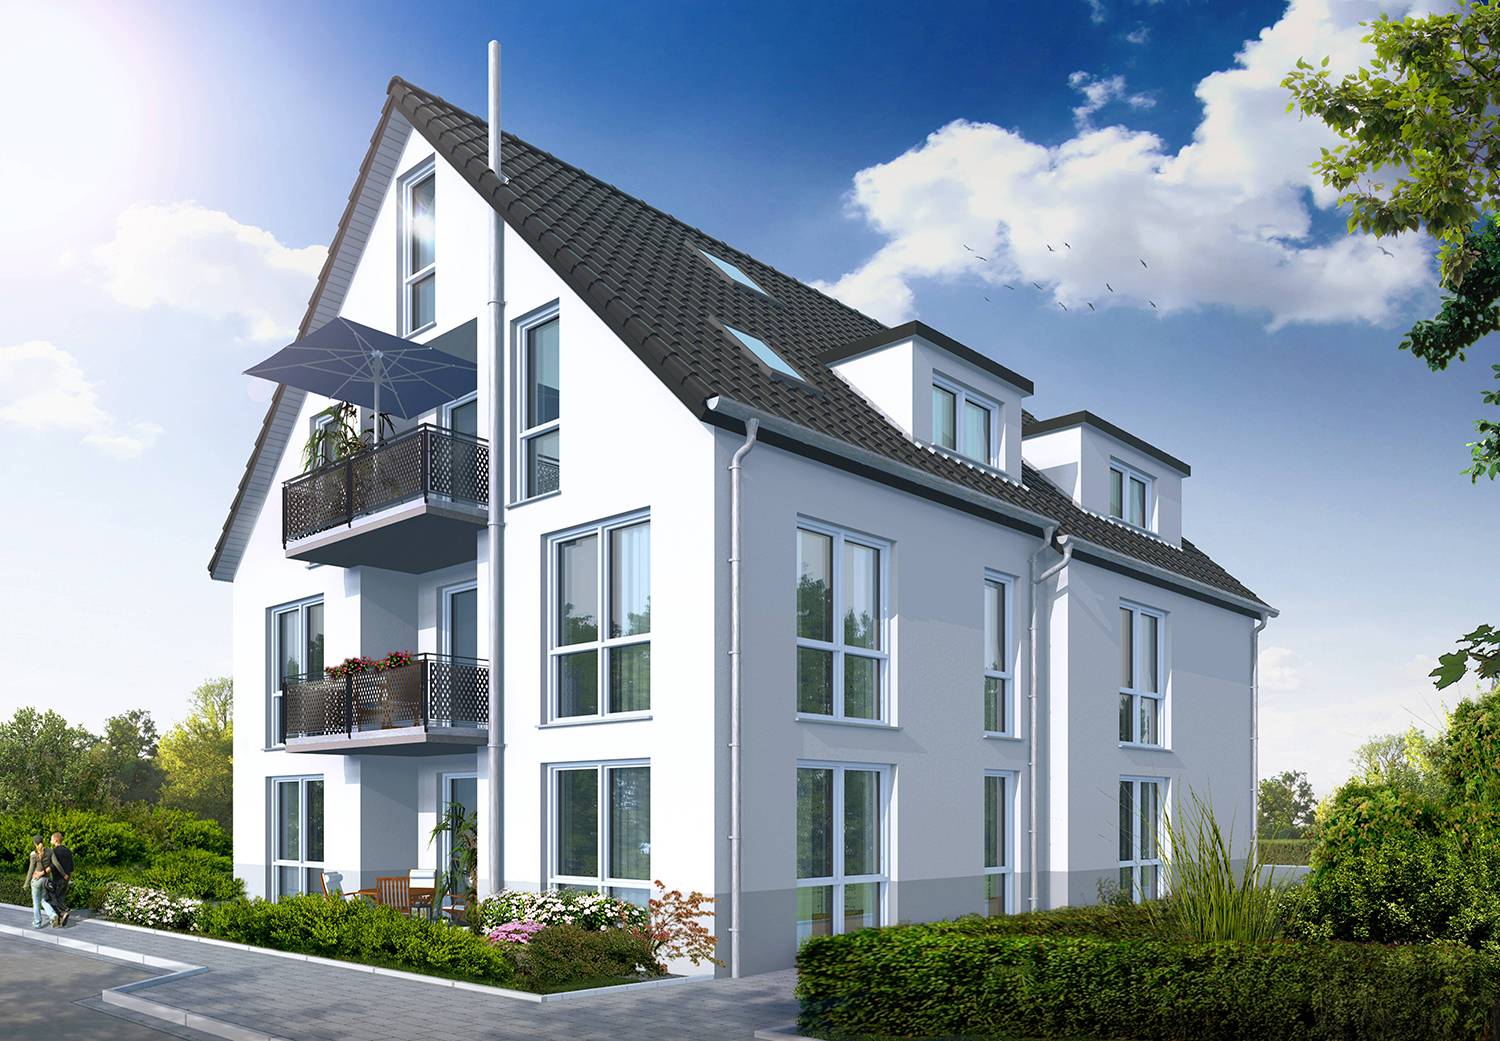 Architekturvisualisierung Süd-West-Perspektive Bauvorhaben Mehrparteienhaus in Filderstadt-Bonlanden, Kreuzstr. 10, für Bemmerer Wohnbau & Immobilien GmbH, Neuenstein (Jahr 2021)